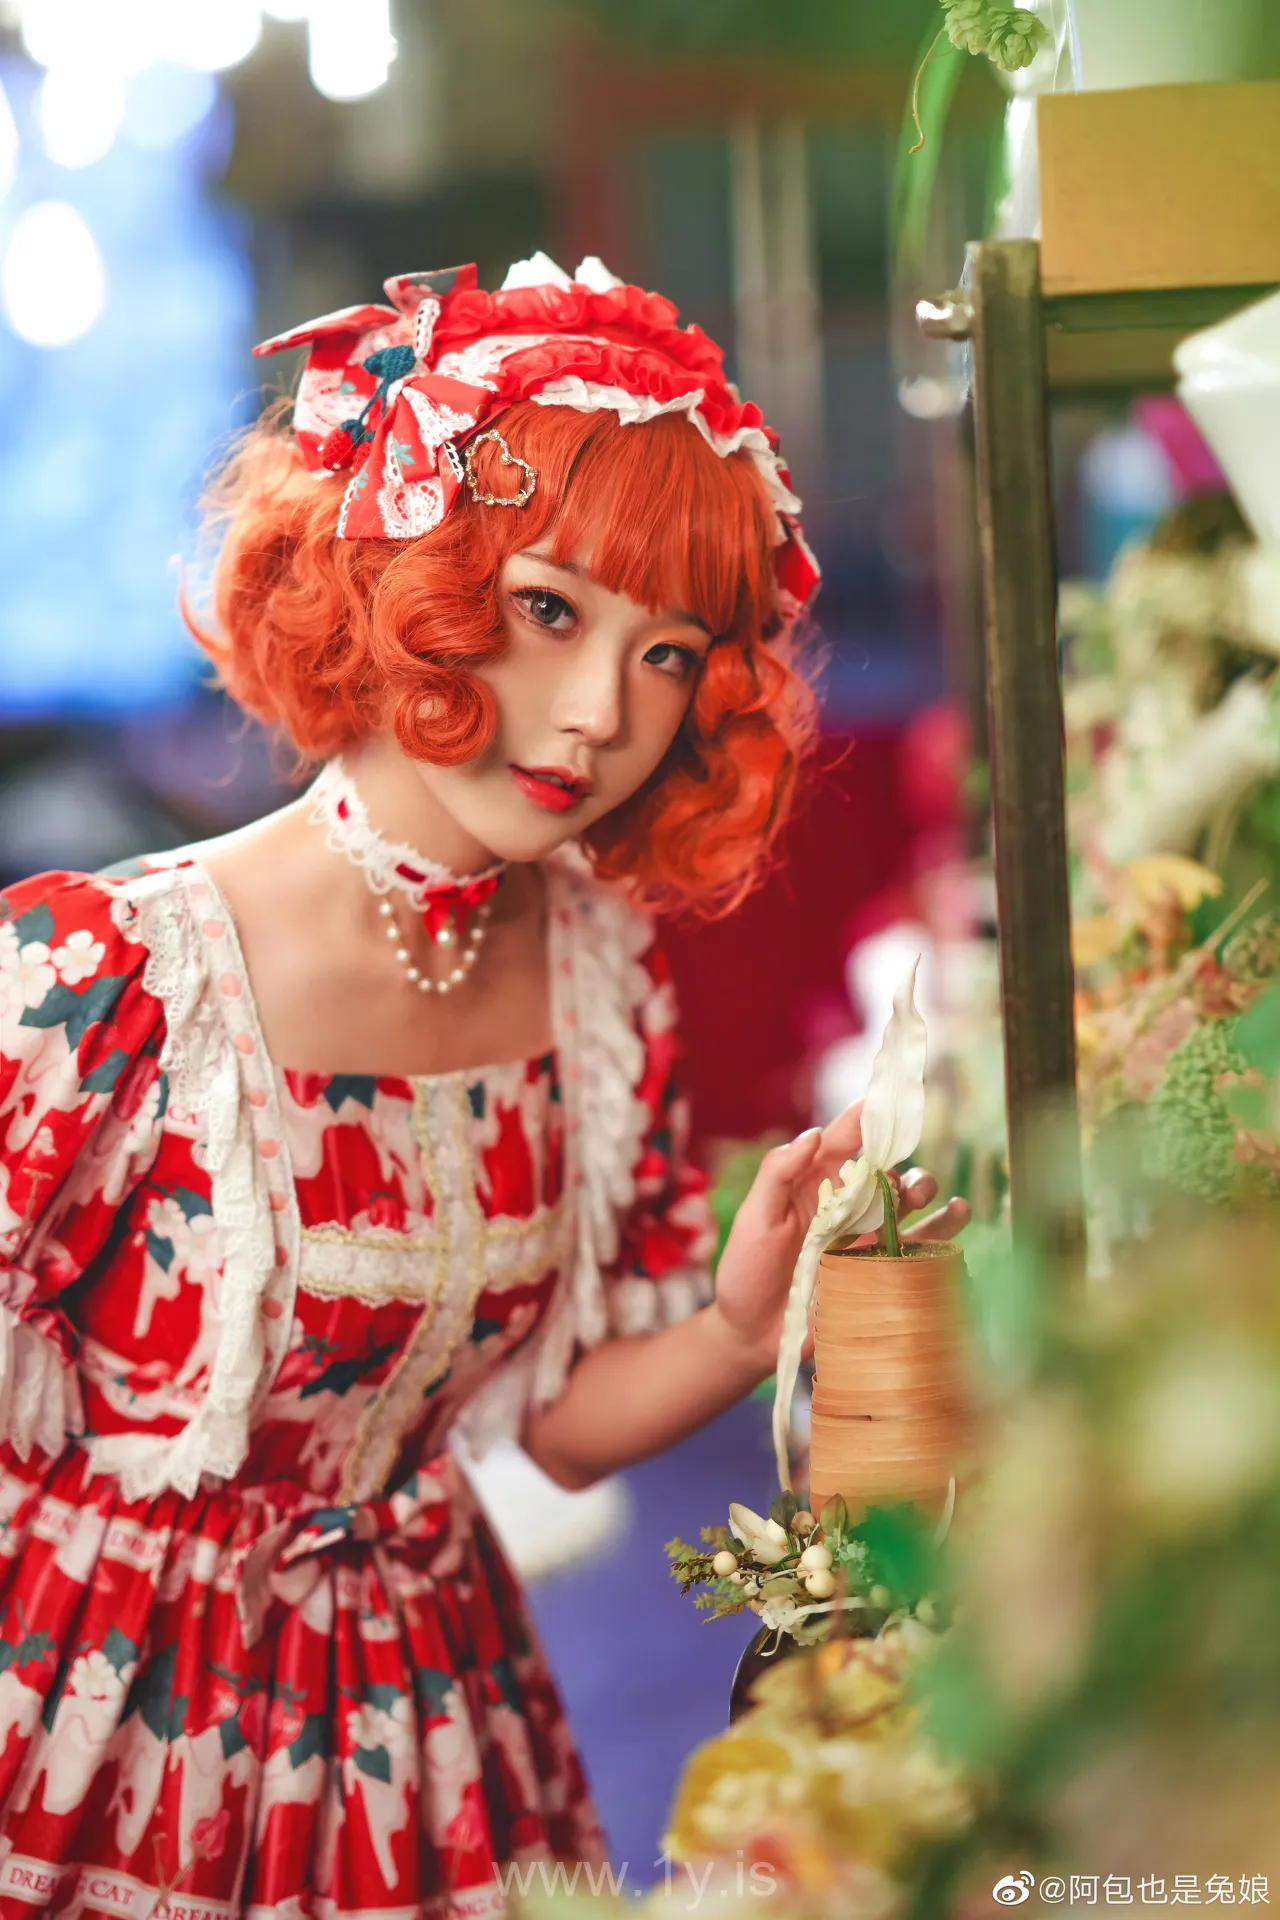 阿包也是兔娘 NO.12 lolita红裙